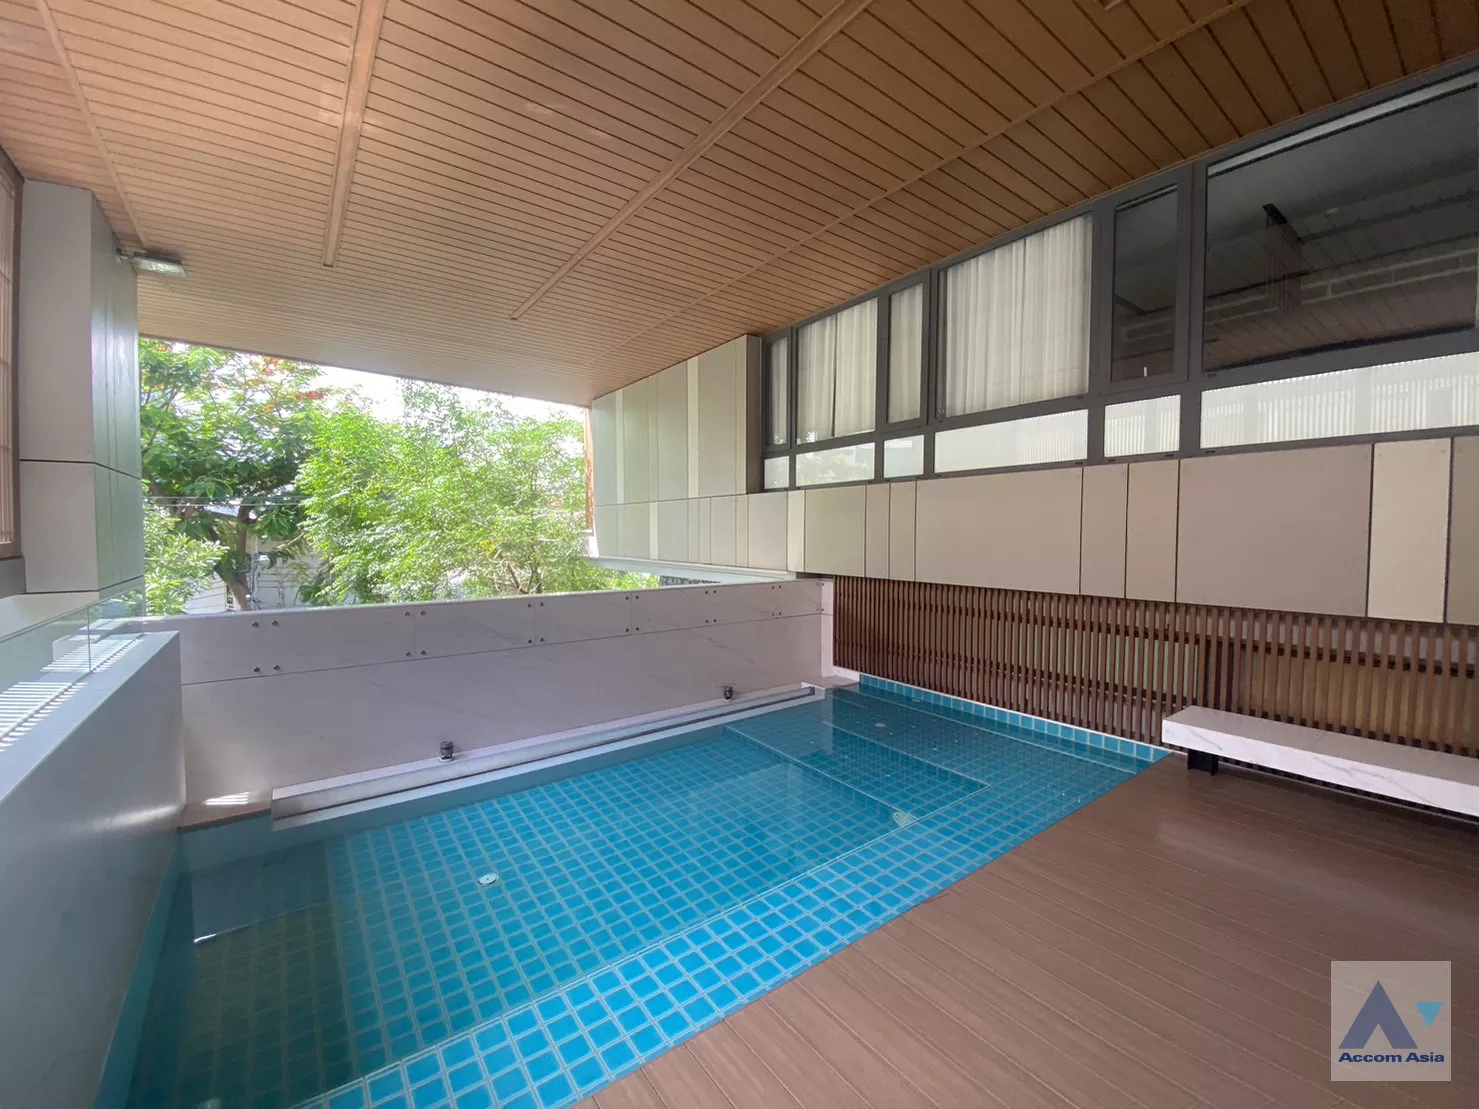  2 Serene Place with Modern Style - Apartment - Sukhumvit - Bangkok / Accomasia